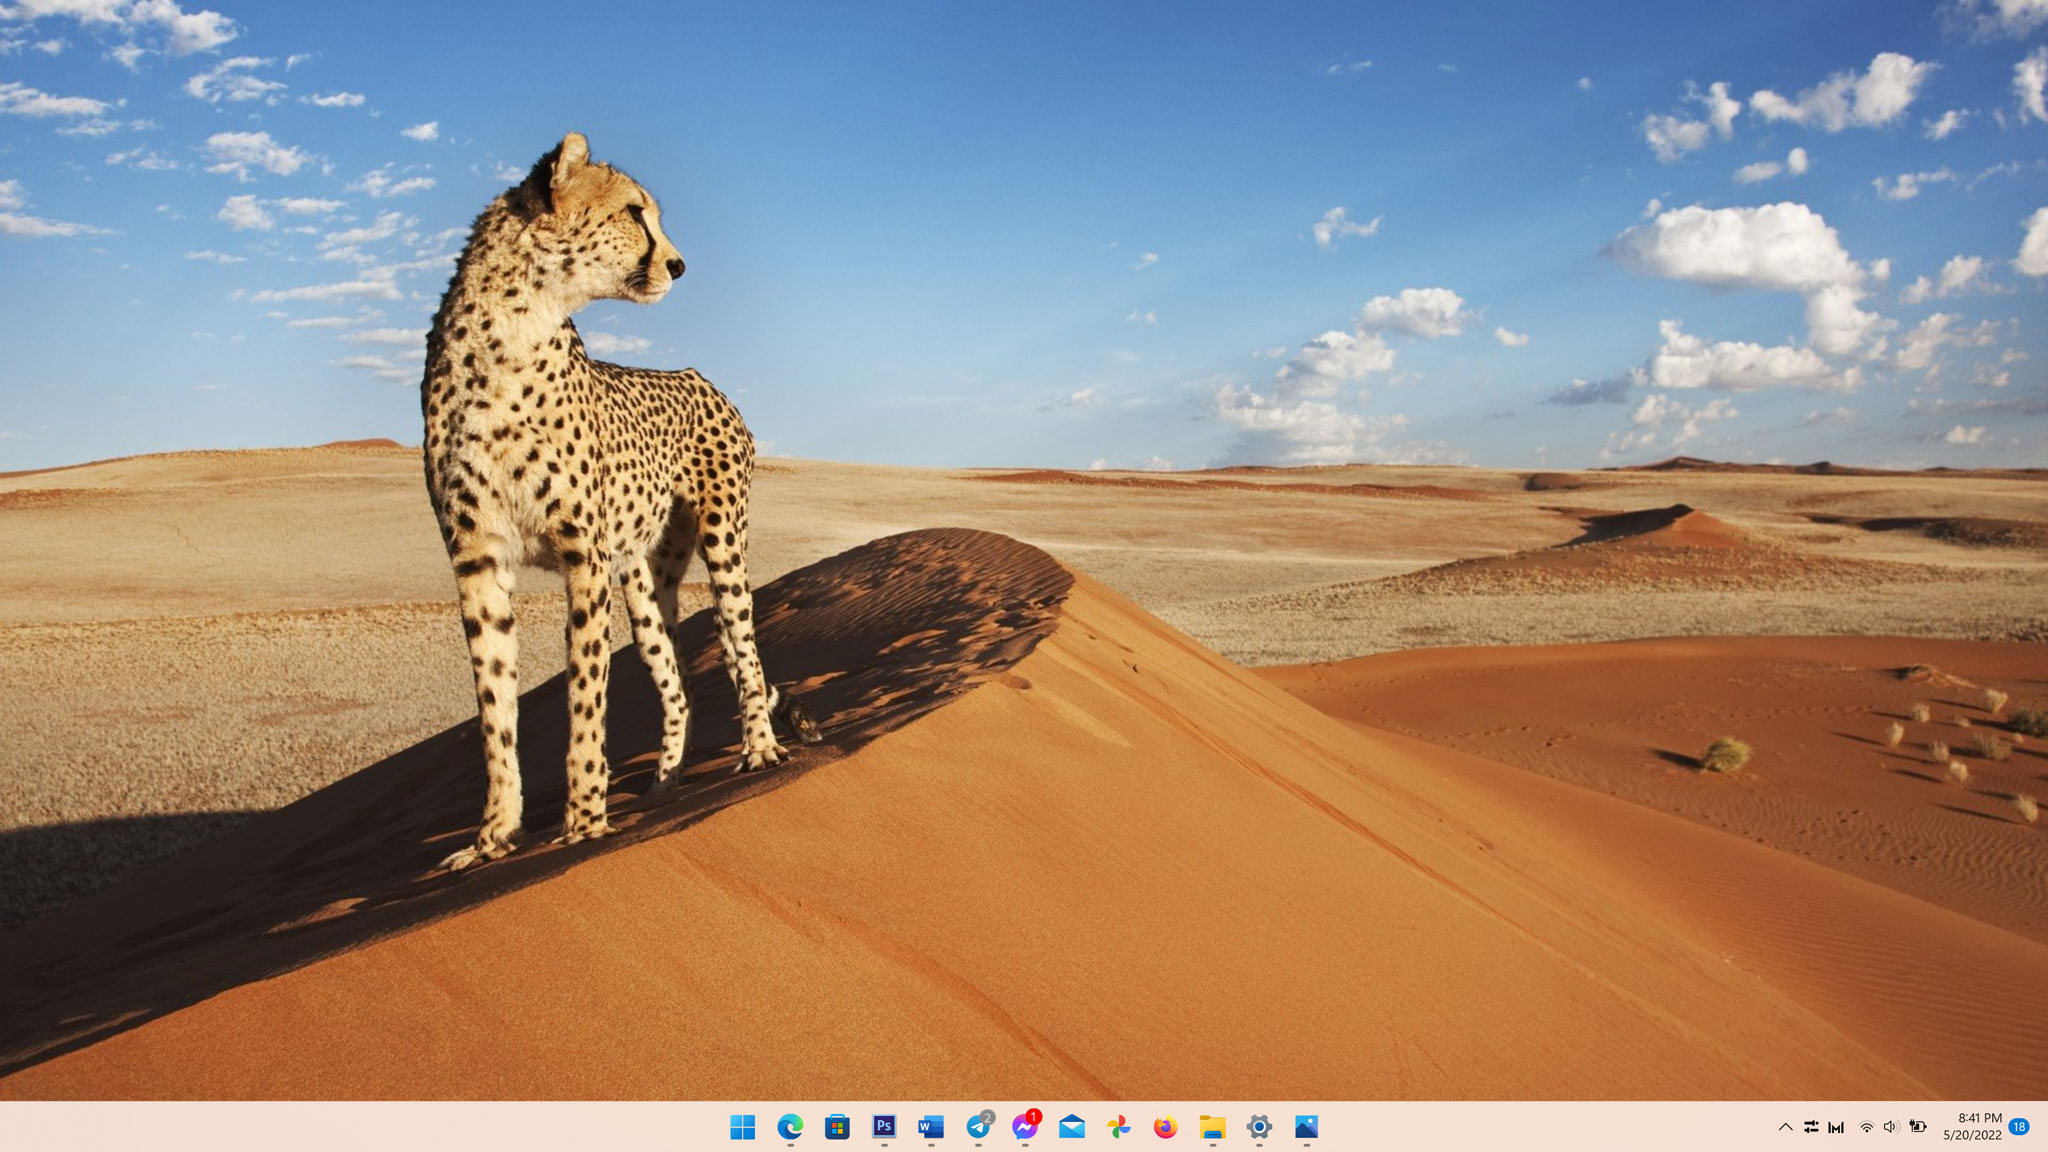 Windows 11 là một hệ điều hành mới và đầy hứa hẹn, với nhiều tính năng ưu việt. Trong đó, chức năng đổi hình nền tự động hàng ngày sẽ giúp bạn thấy cảm giác luôn có cái mới mẻ trên thiết bị của mình. Cùng khám phá ngay những bức ảnh nền đặc sắc chỉ có trên Windows 11!